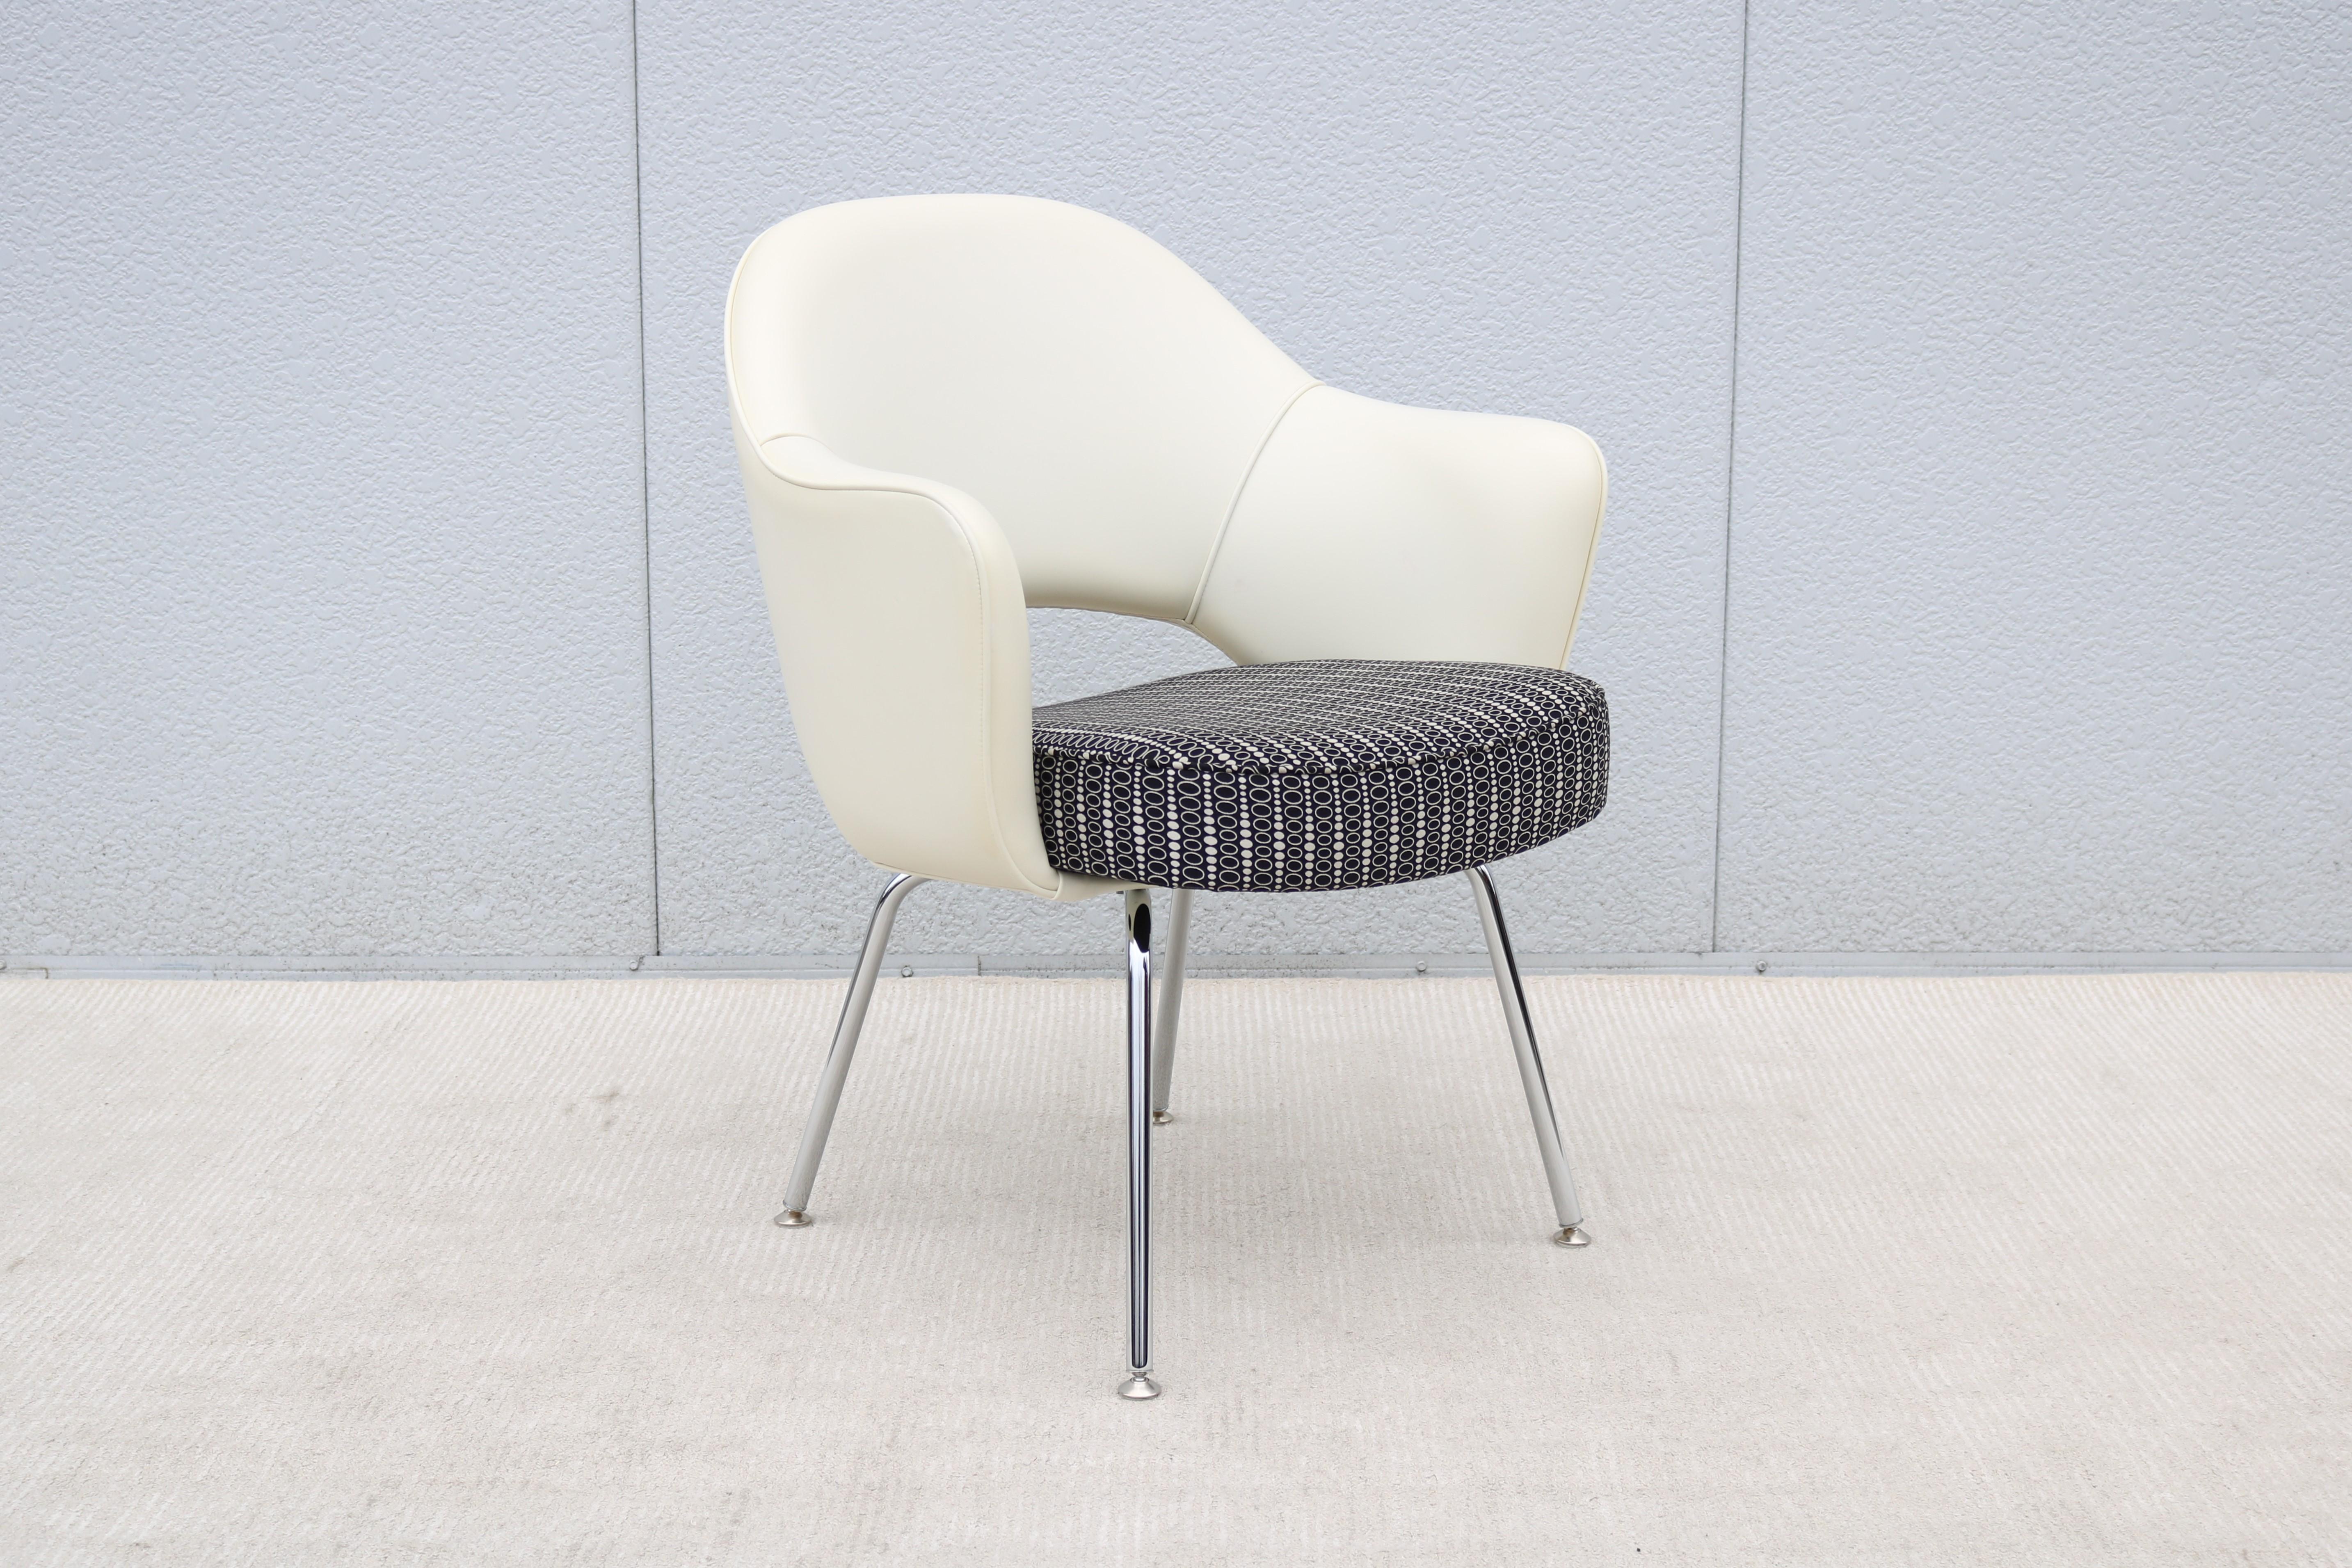 Atemberaubend authentisch Mitte des Jahrhunderts modernen Saarinen Executive Sessel von Knoll.
Einer der beliebtesten Entwürfe von Knoll, der durch die Form seiner Schale höchsten Komfort bietet.
Er wurde 1950 eingeführt und ist ein moderner